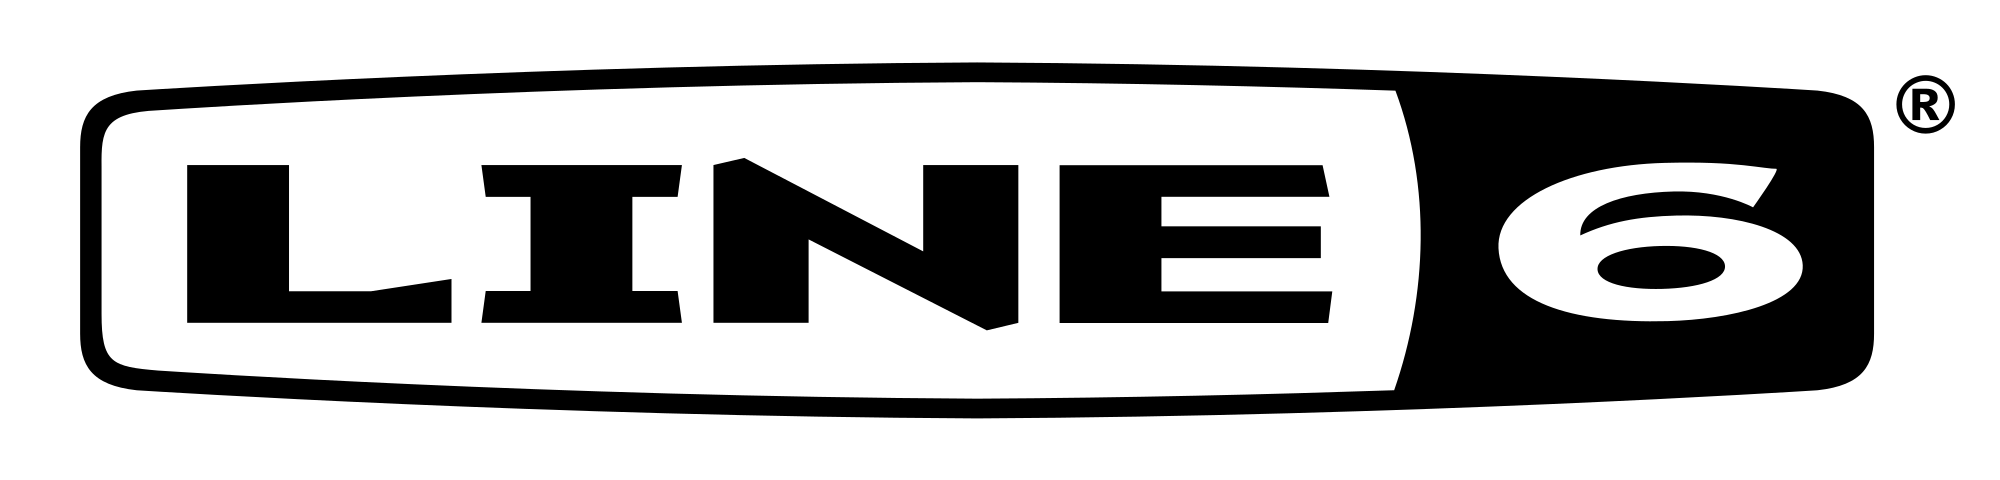 2000px-Line6_Logo.svg.png